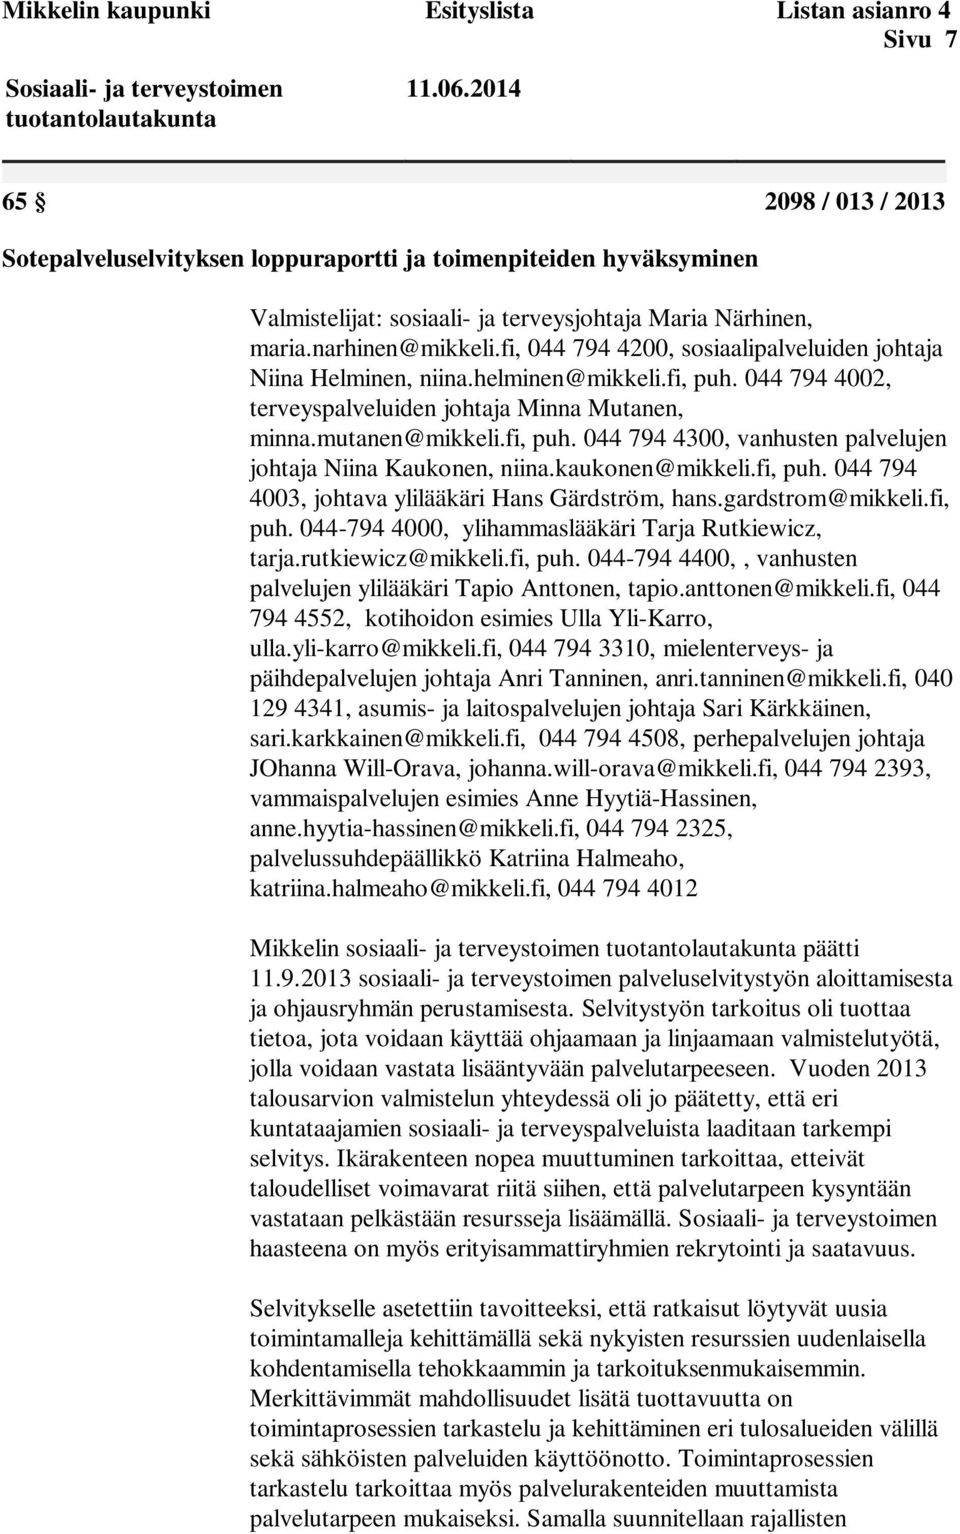 fi, 044 794 4200, sosiaalipalveluiden johtaja Niina Helminen, niina.helminen@mikkeli.fi, puh. 044 794 4002, terveyspalveluiden johtaja Minna Mutanen, minna.mutanen@mikkeli.fi, puh. 044 794 4300, vanhusten palvelujen johtaja Niina Kaukonen, niina.